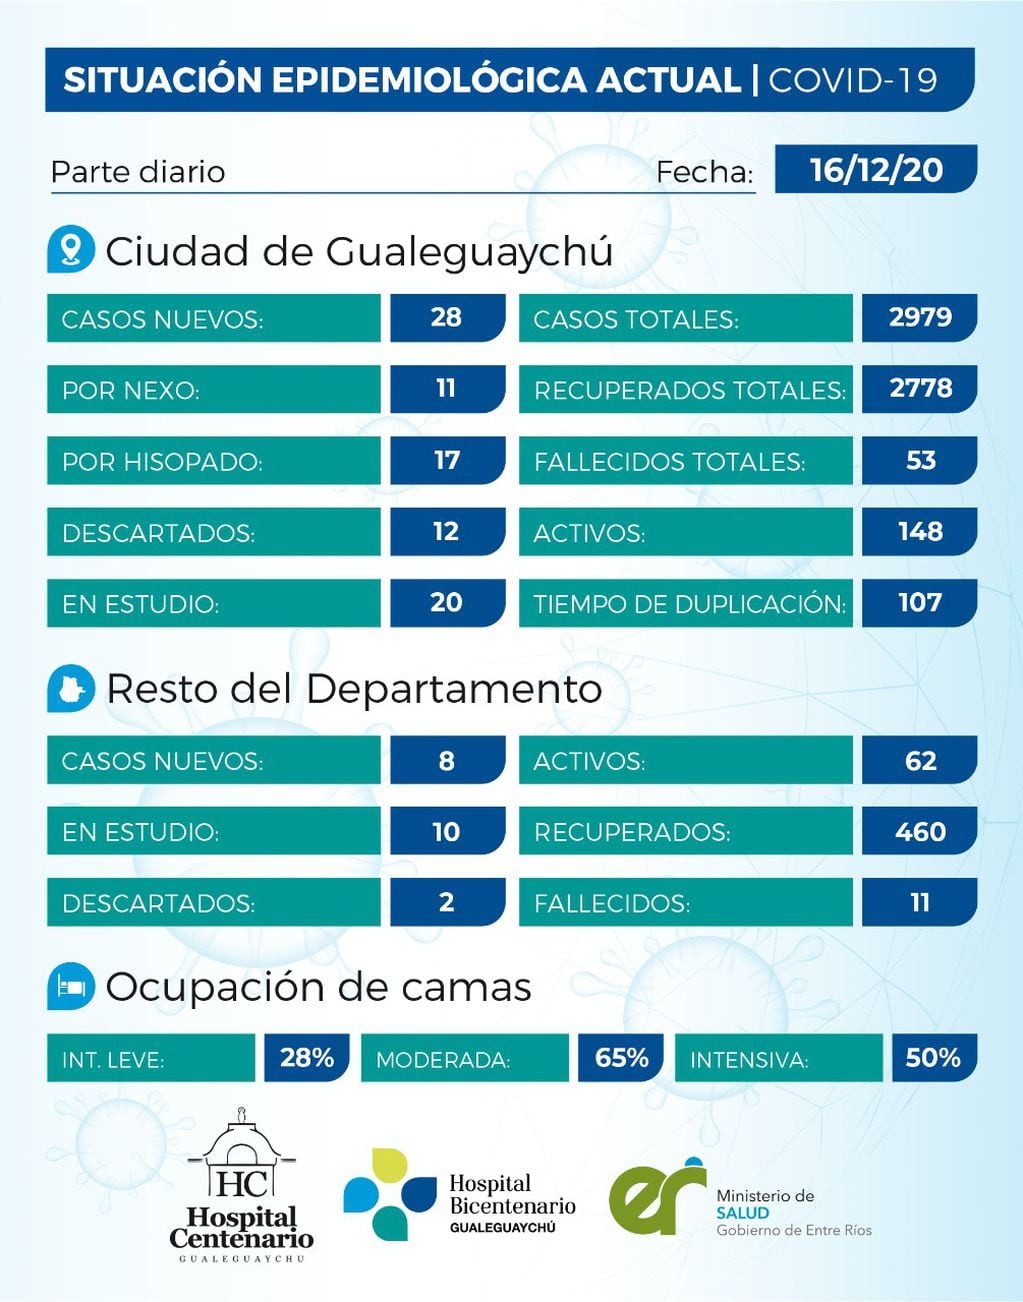 El tiempo de duplicación de casos de COVID-19 es de 107 días en Gualeguaychú